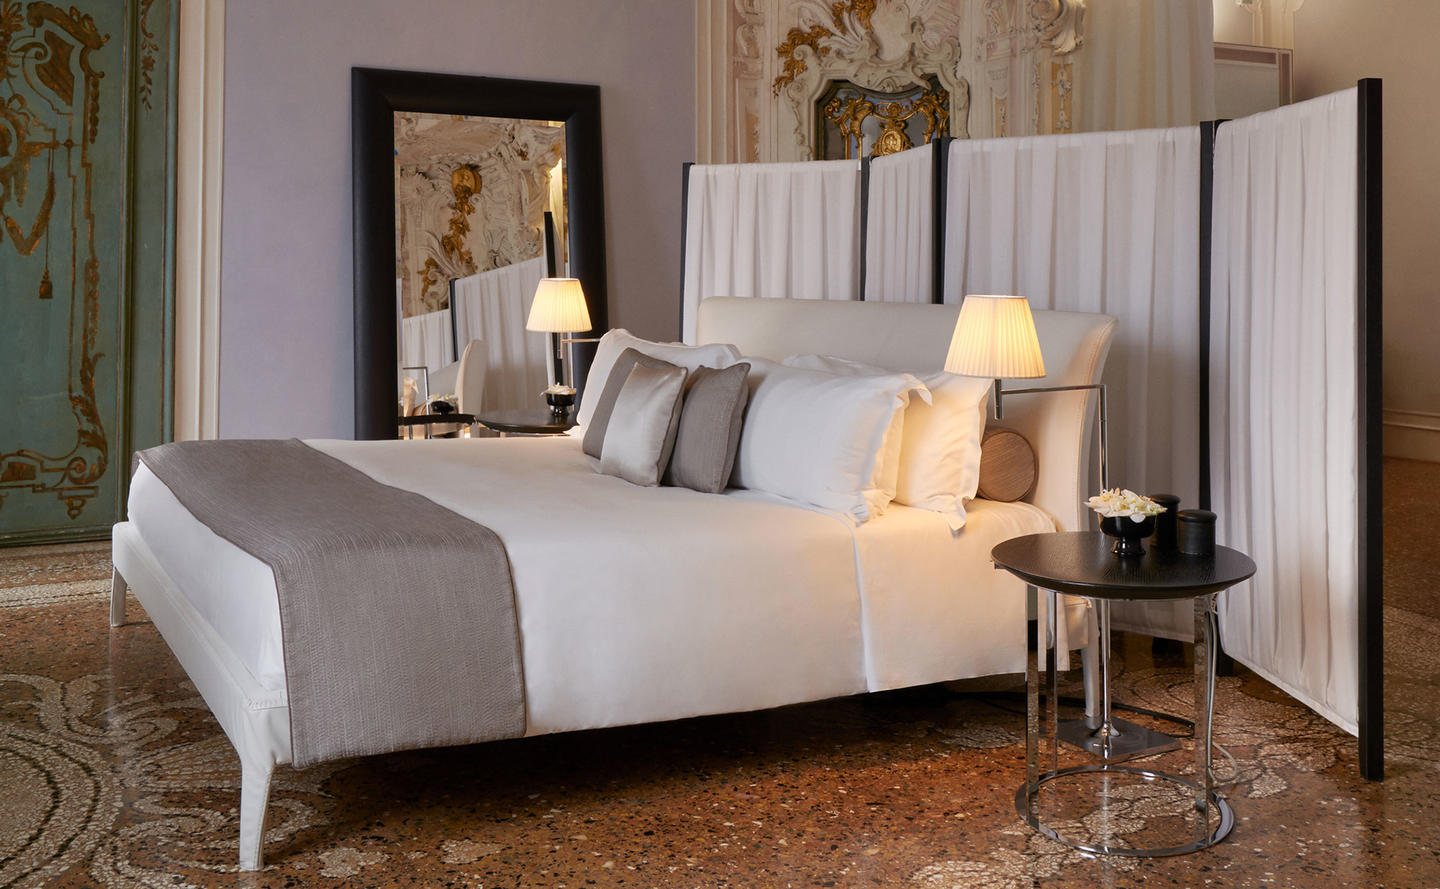 Bedroom, Alcova Tiepolo Suite - Aman Venice, Italy